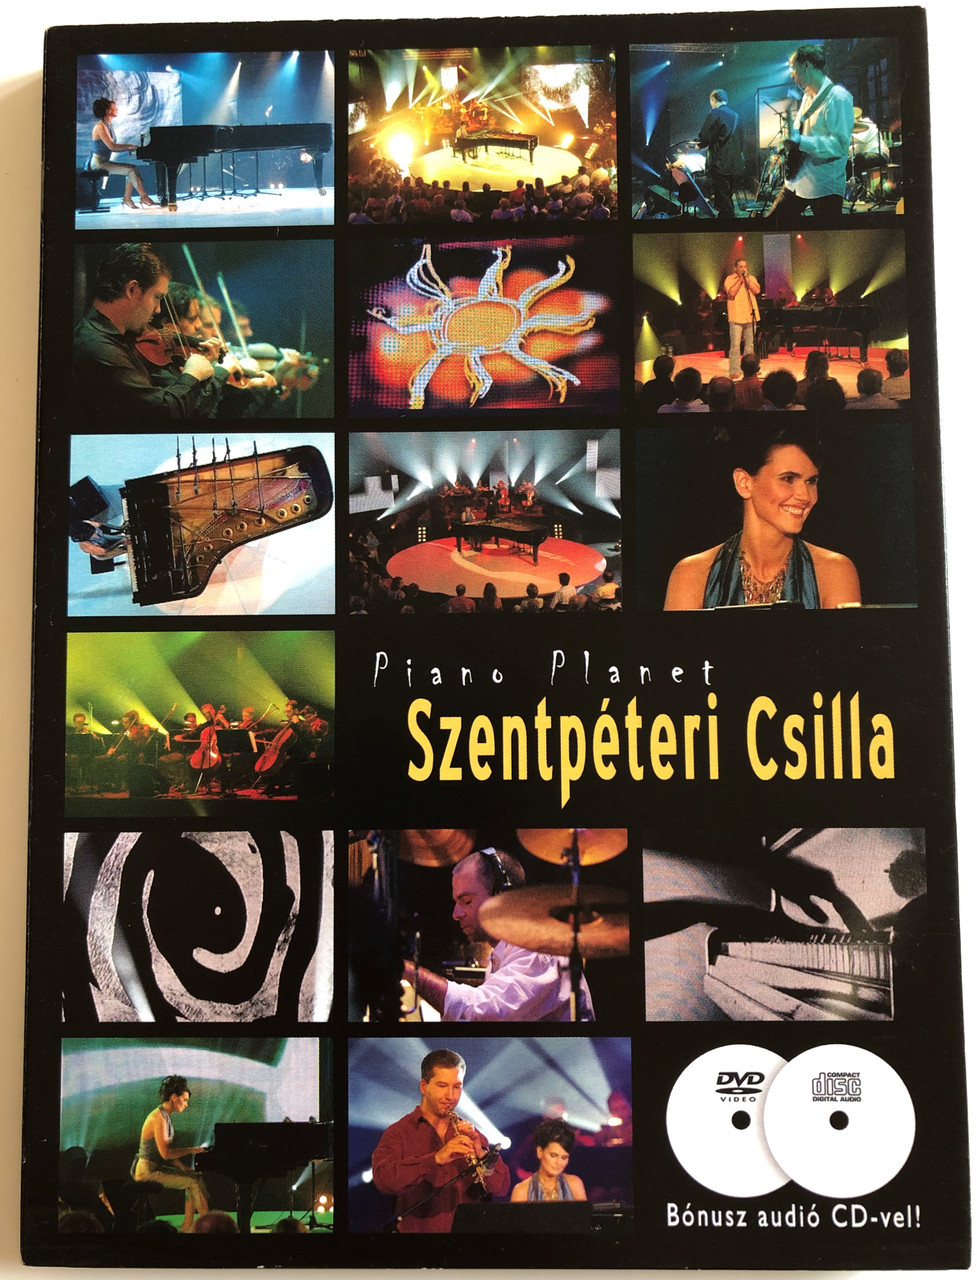 Piano Planet - Szentpéteri Csilla DVD + Audio CD / Directed by Koós György  / Láva, dongó, Aranykor, Életöröm, Meteor / Echo B687612-4 -  bibleinmylanguage